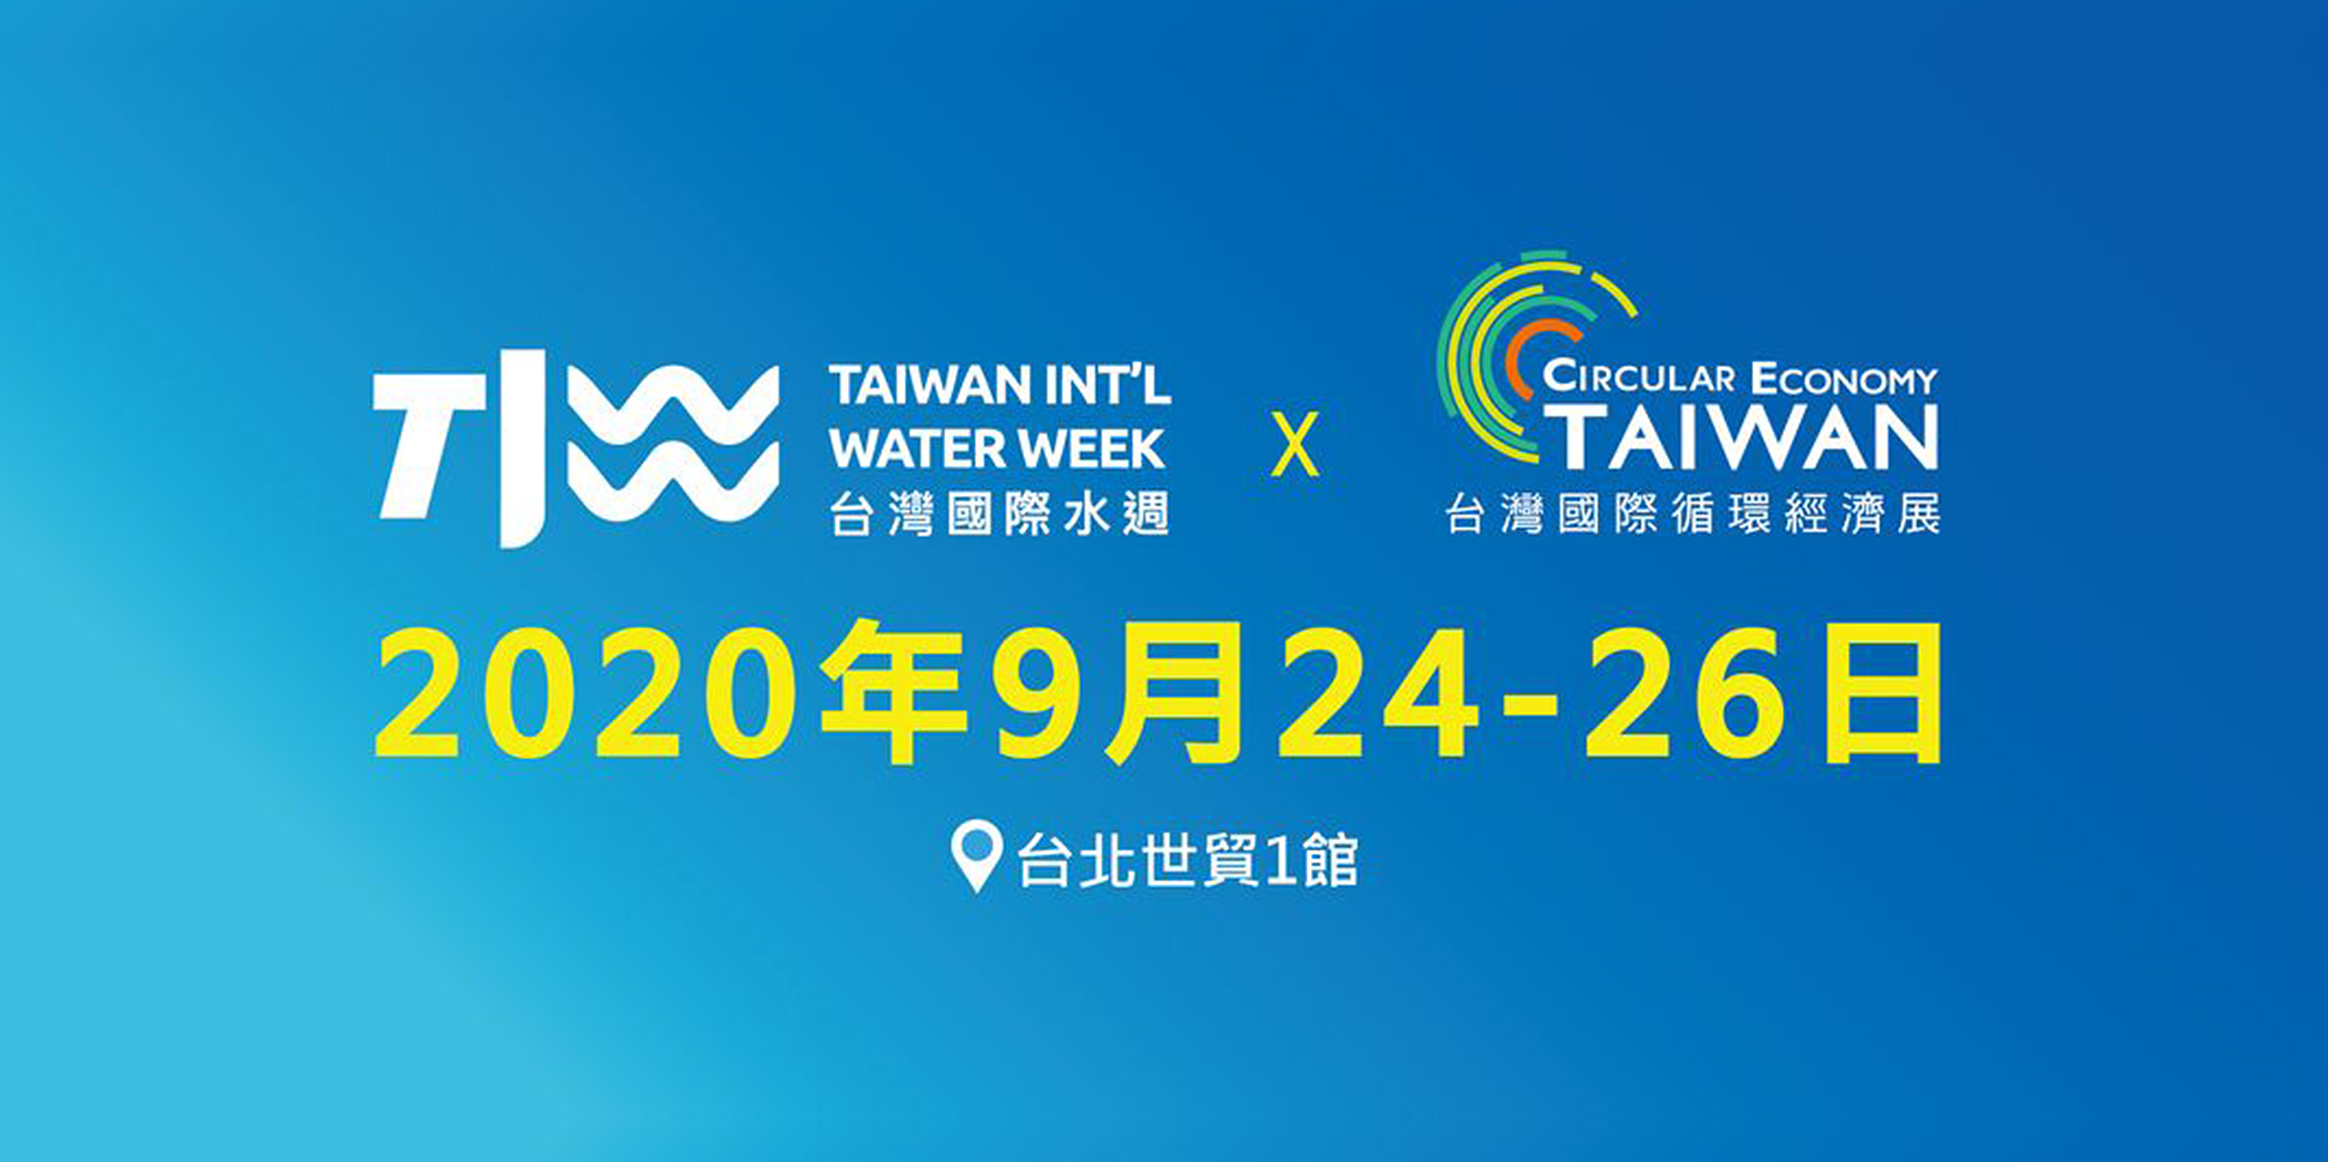 2020台灣國際水週-超極生技於2020年9月24日至26日參與台灣國際水週，推廣全球首創、免校正酸鹼檢測系統。
            